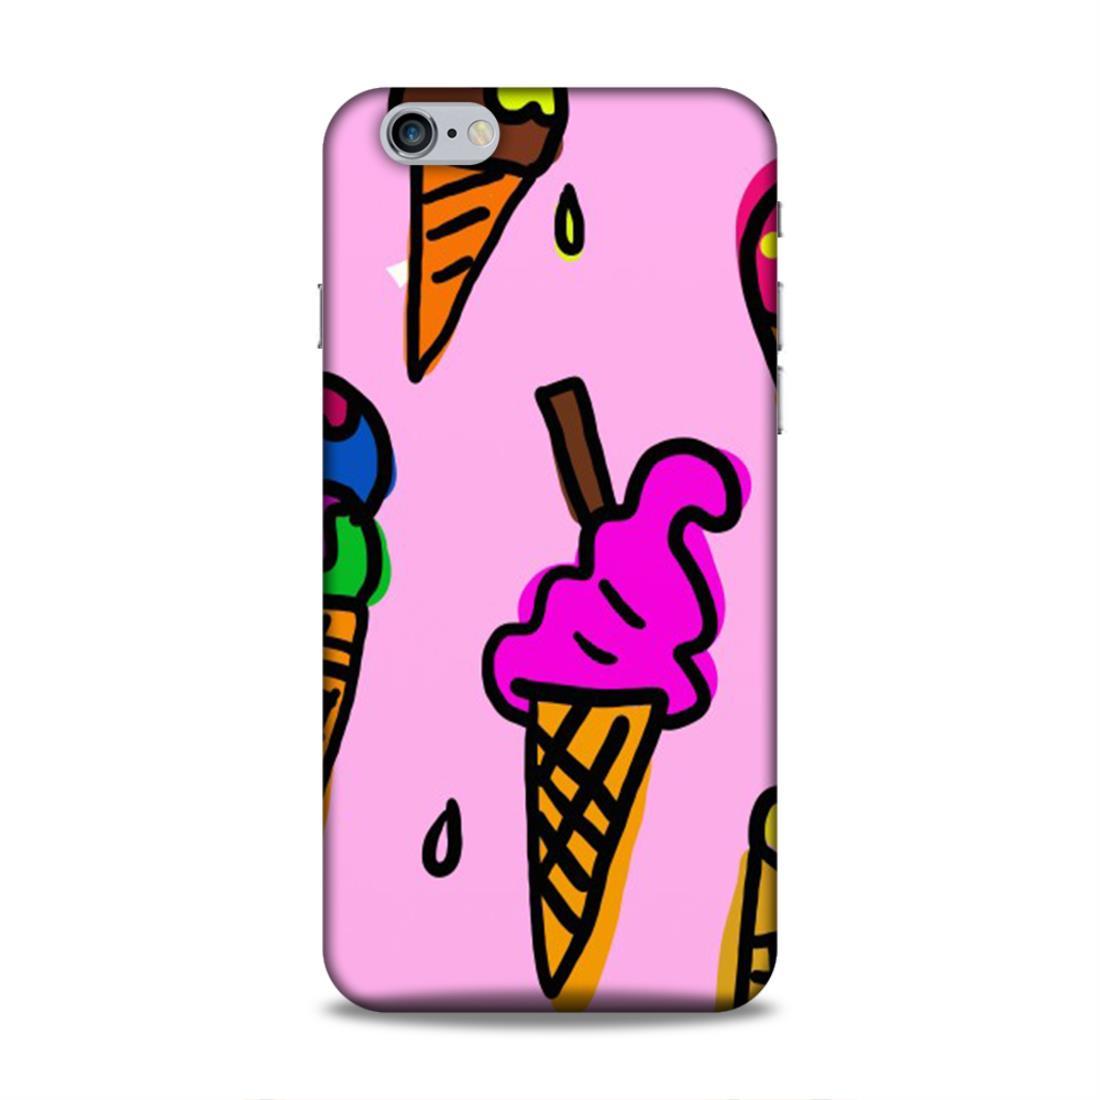 Icecream Pink iPhone 6 Plus Phone Cover